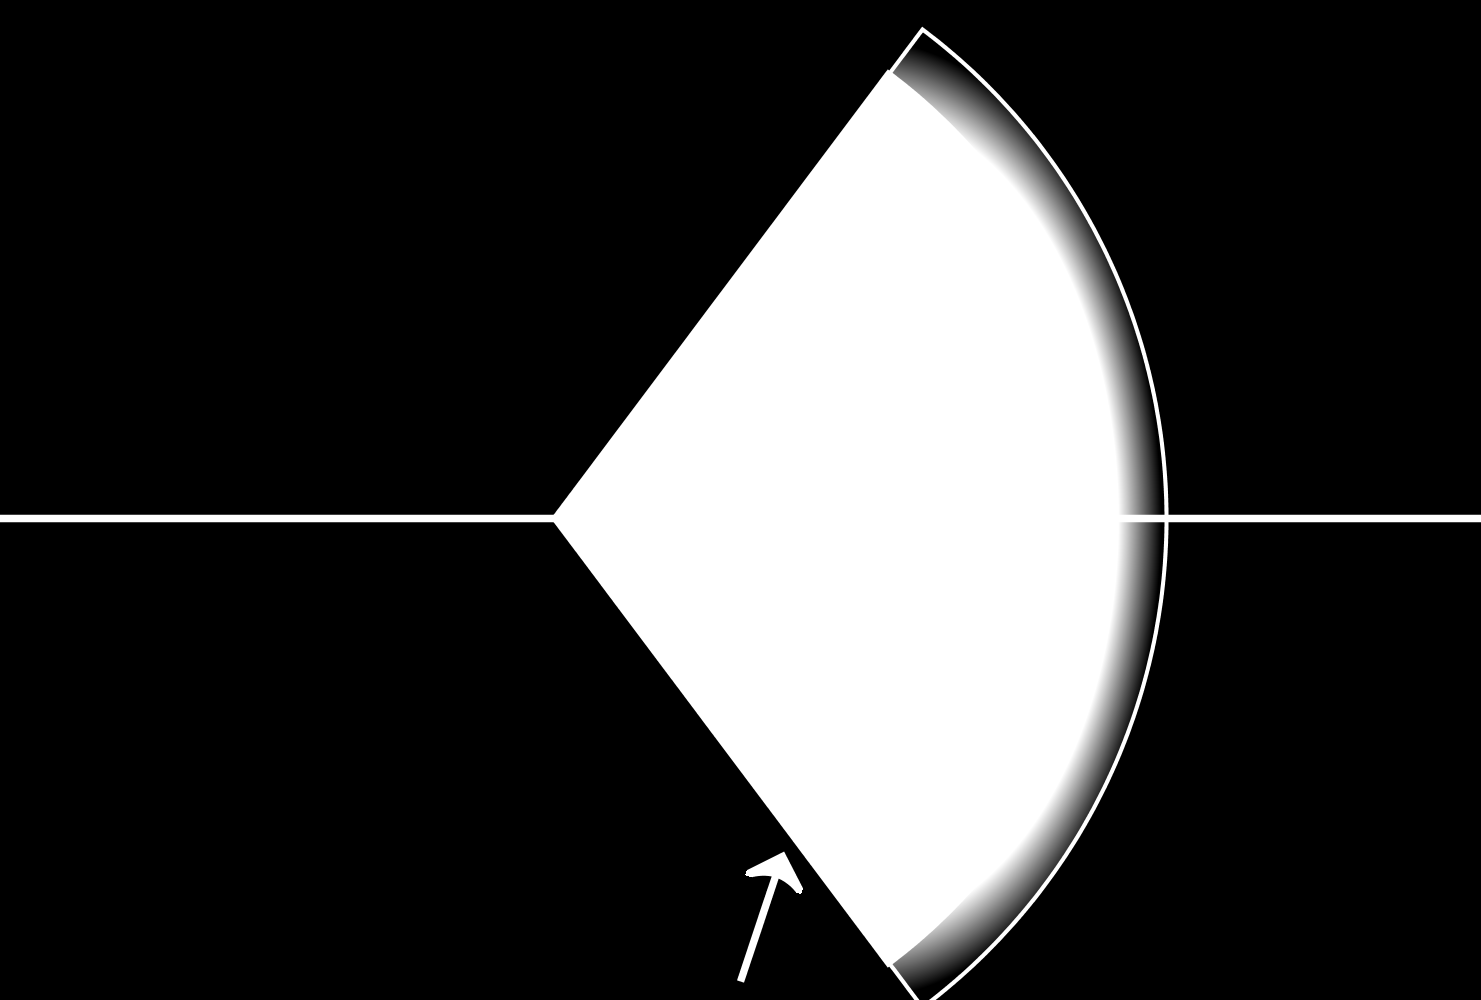 Problem 3. Figuren nedan visar en ljusstråle som infaller på en konkav sfärisk spegel. Den sfäriska ytan har sitt centrum på den optiska axeln. a) Fortsätt ljusstrålens väg. Förklara.